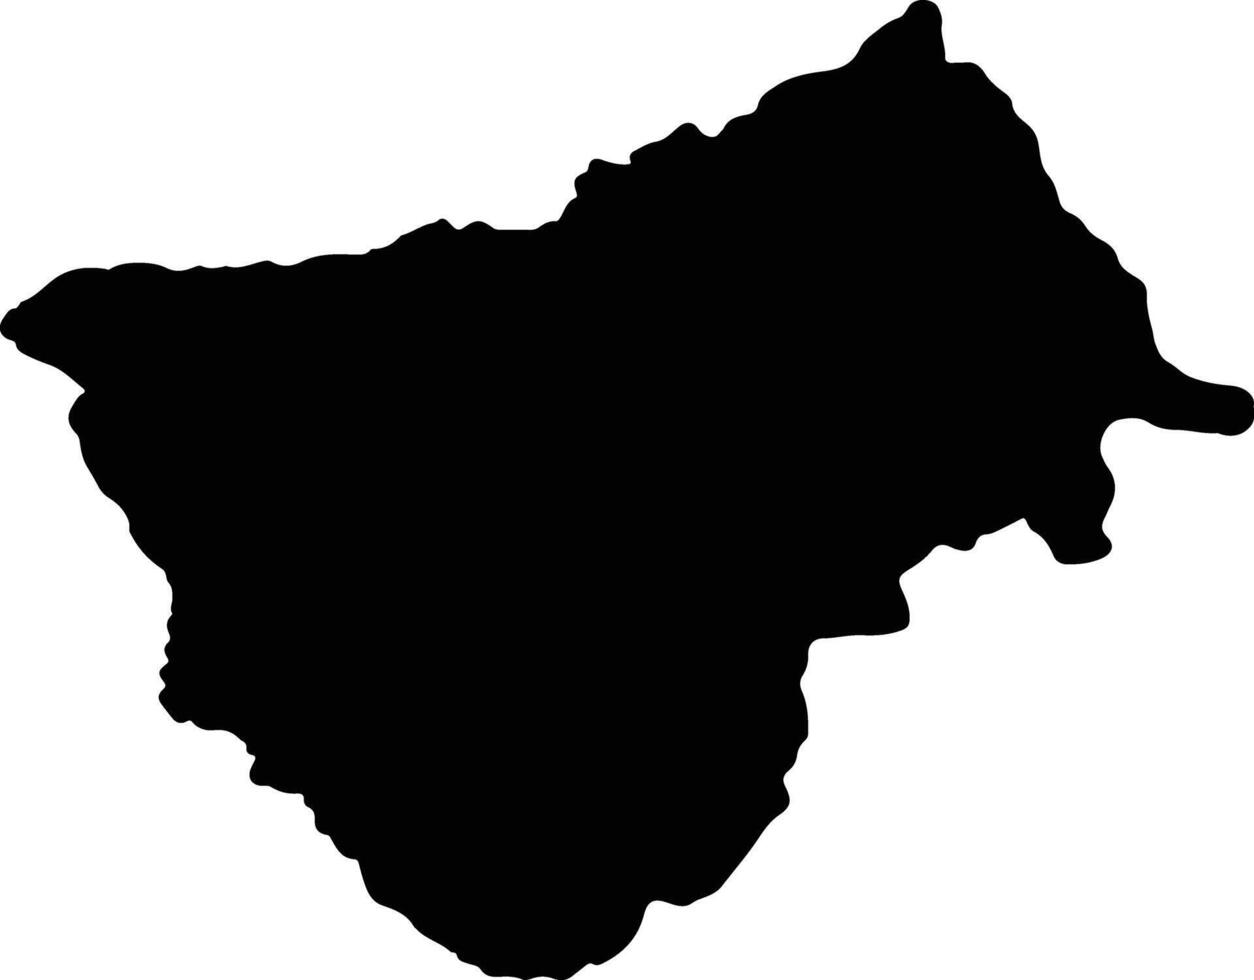 bamingui-bangoran central africain république silhouette carte vecteur